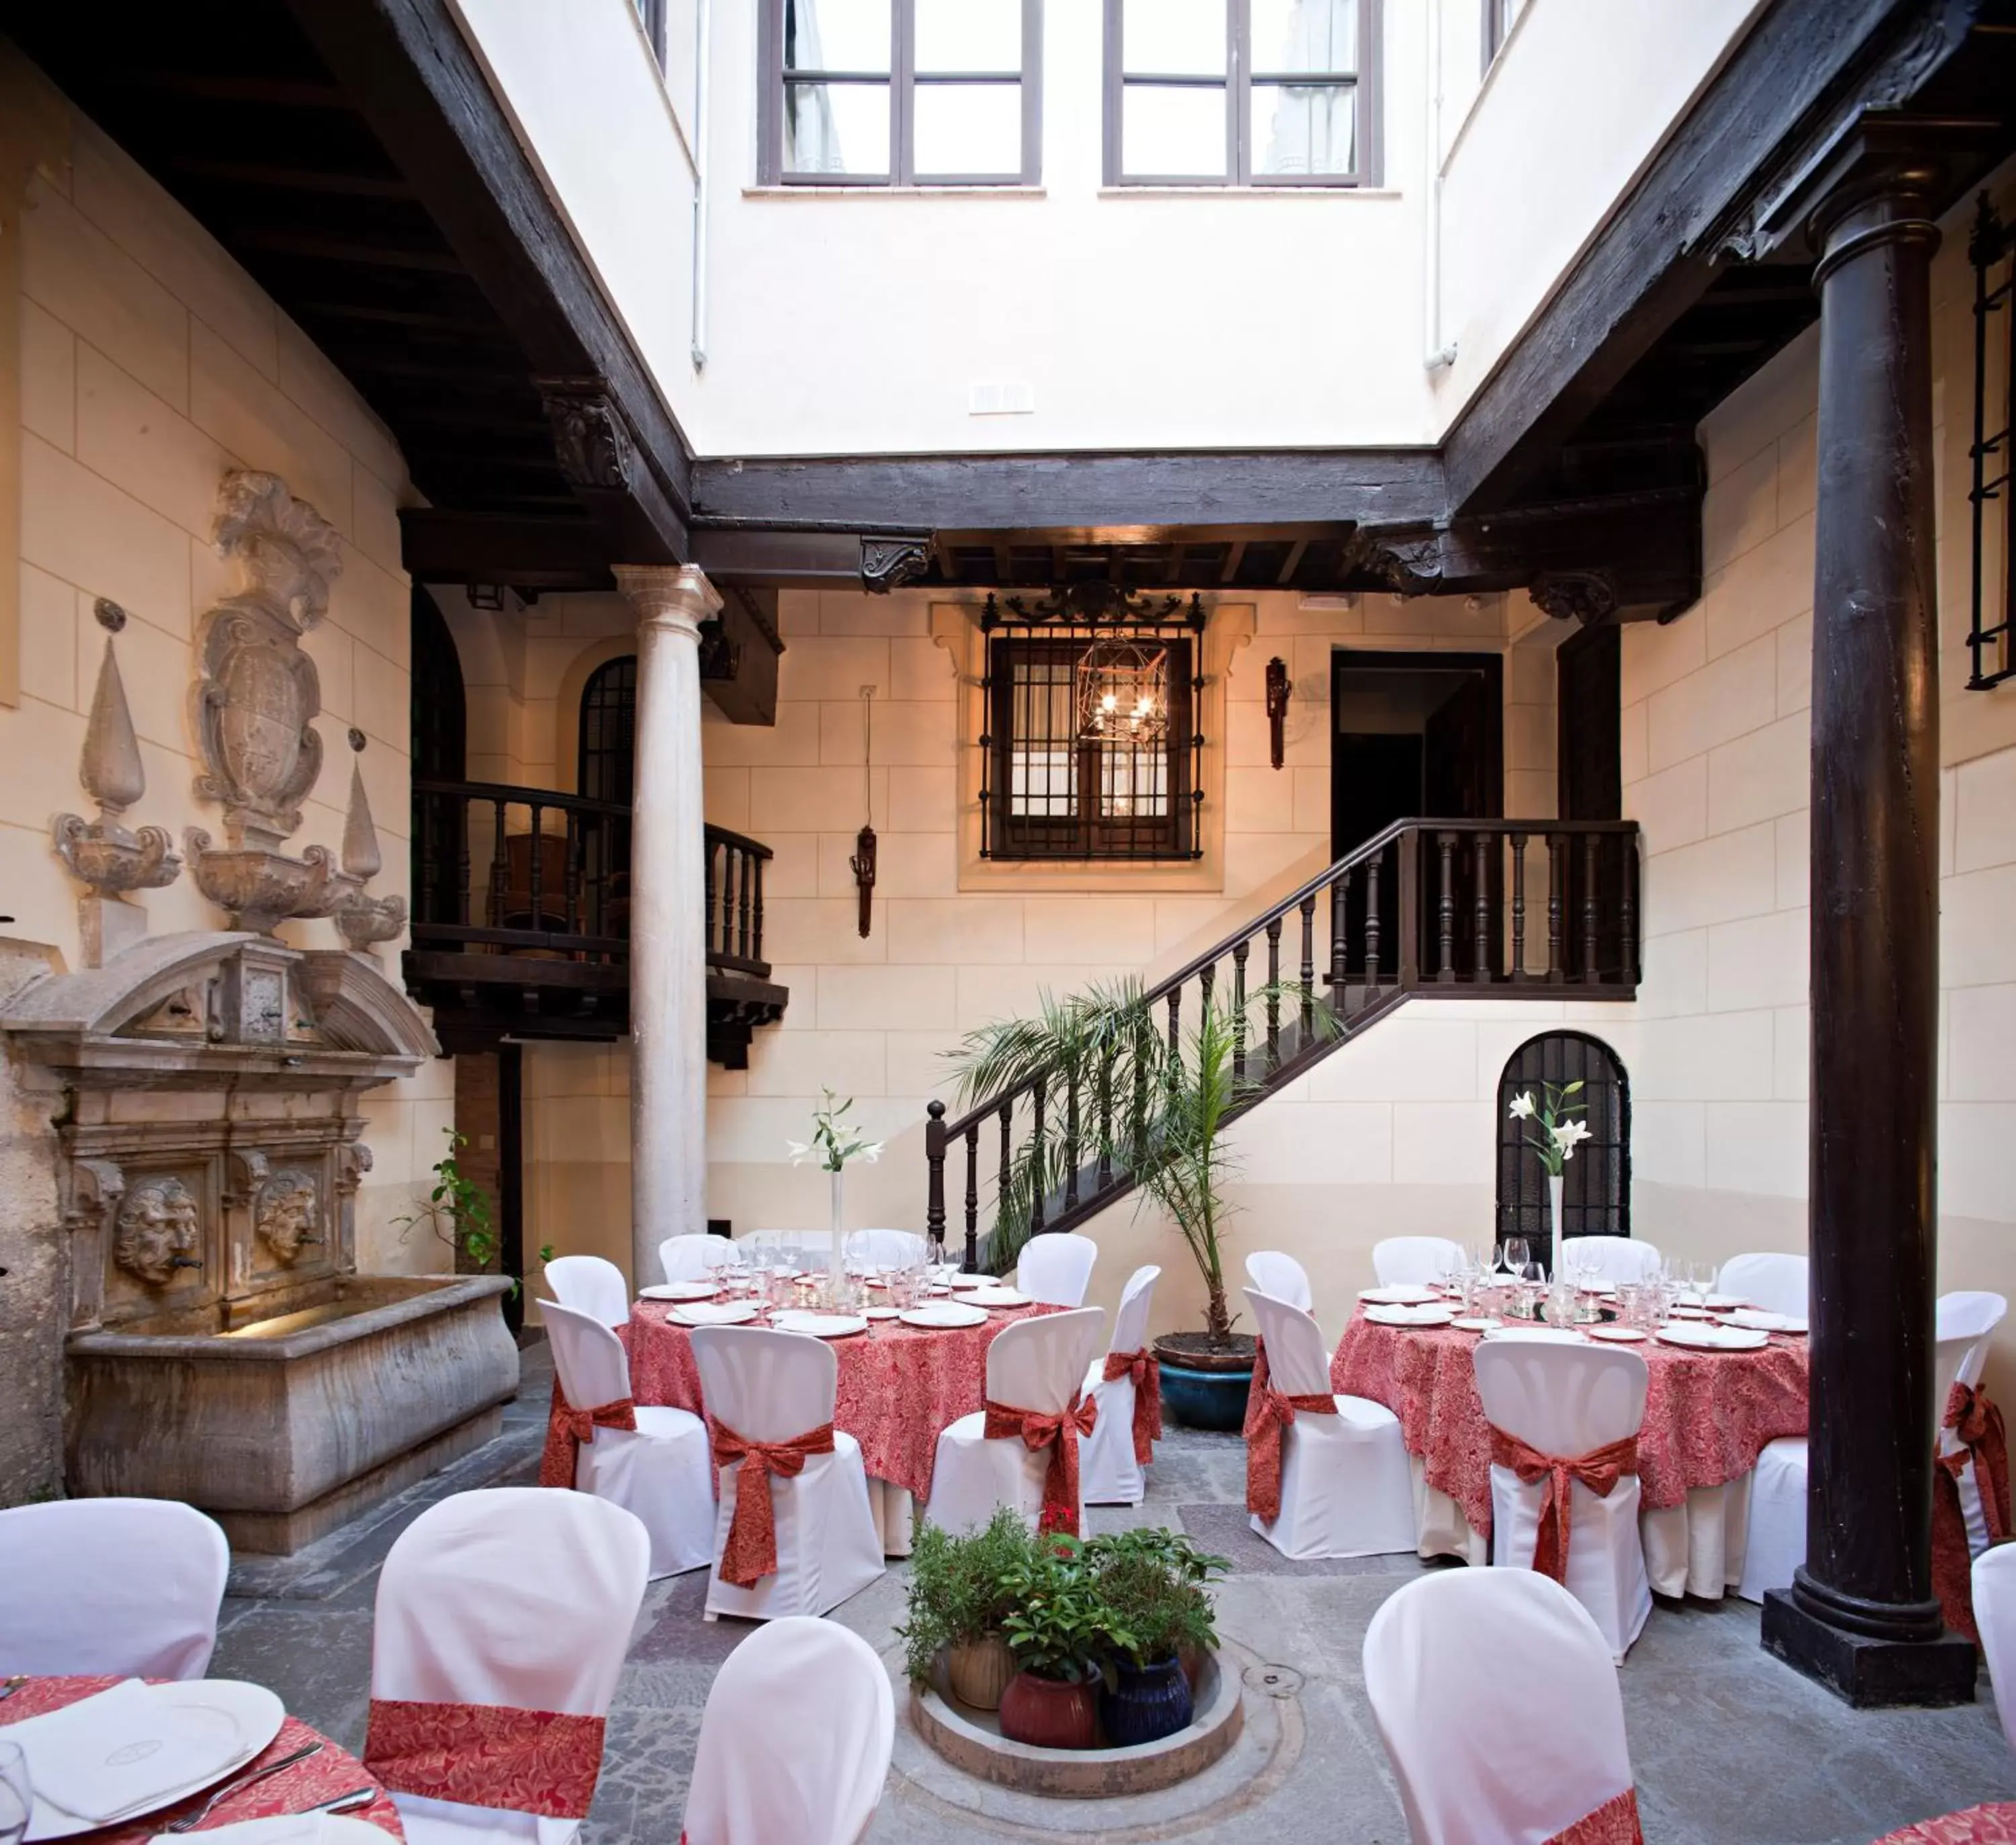 Banquet/Function facilities, Banquet Facilities in Palacio de Mariana Pineda